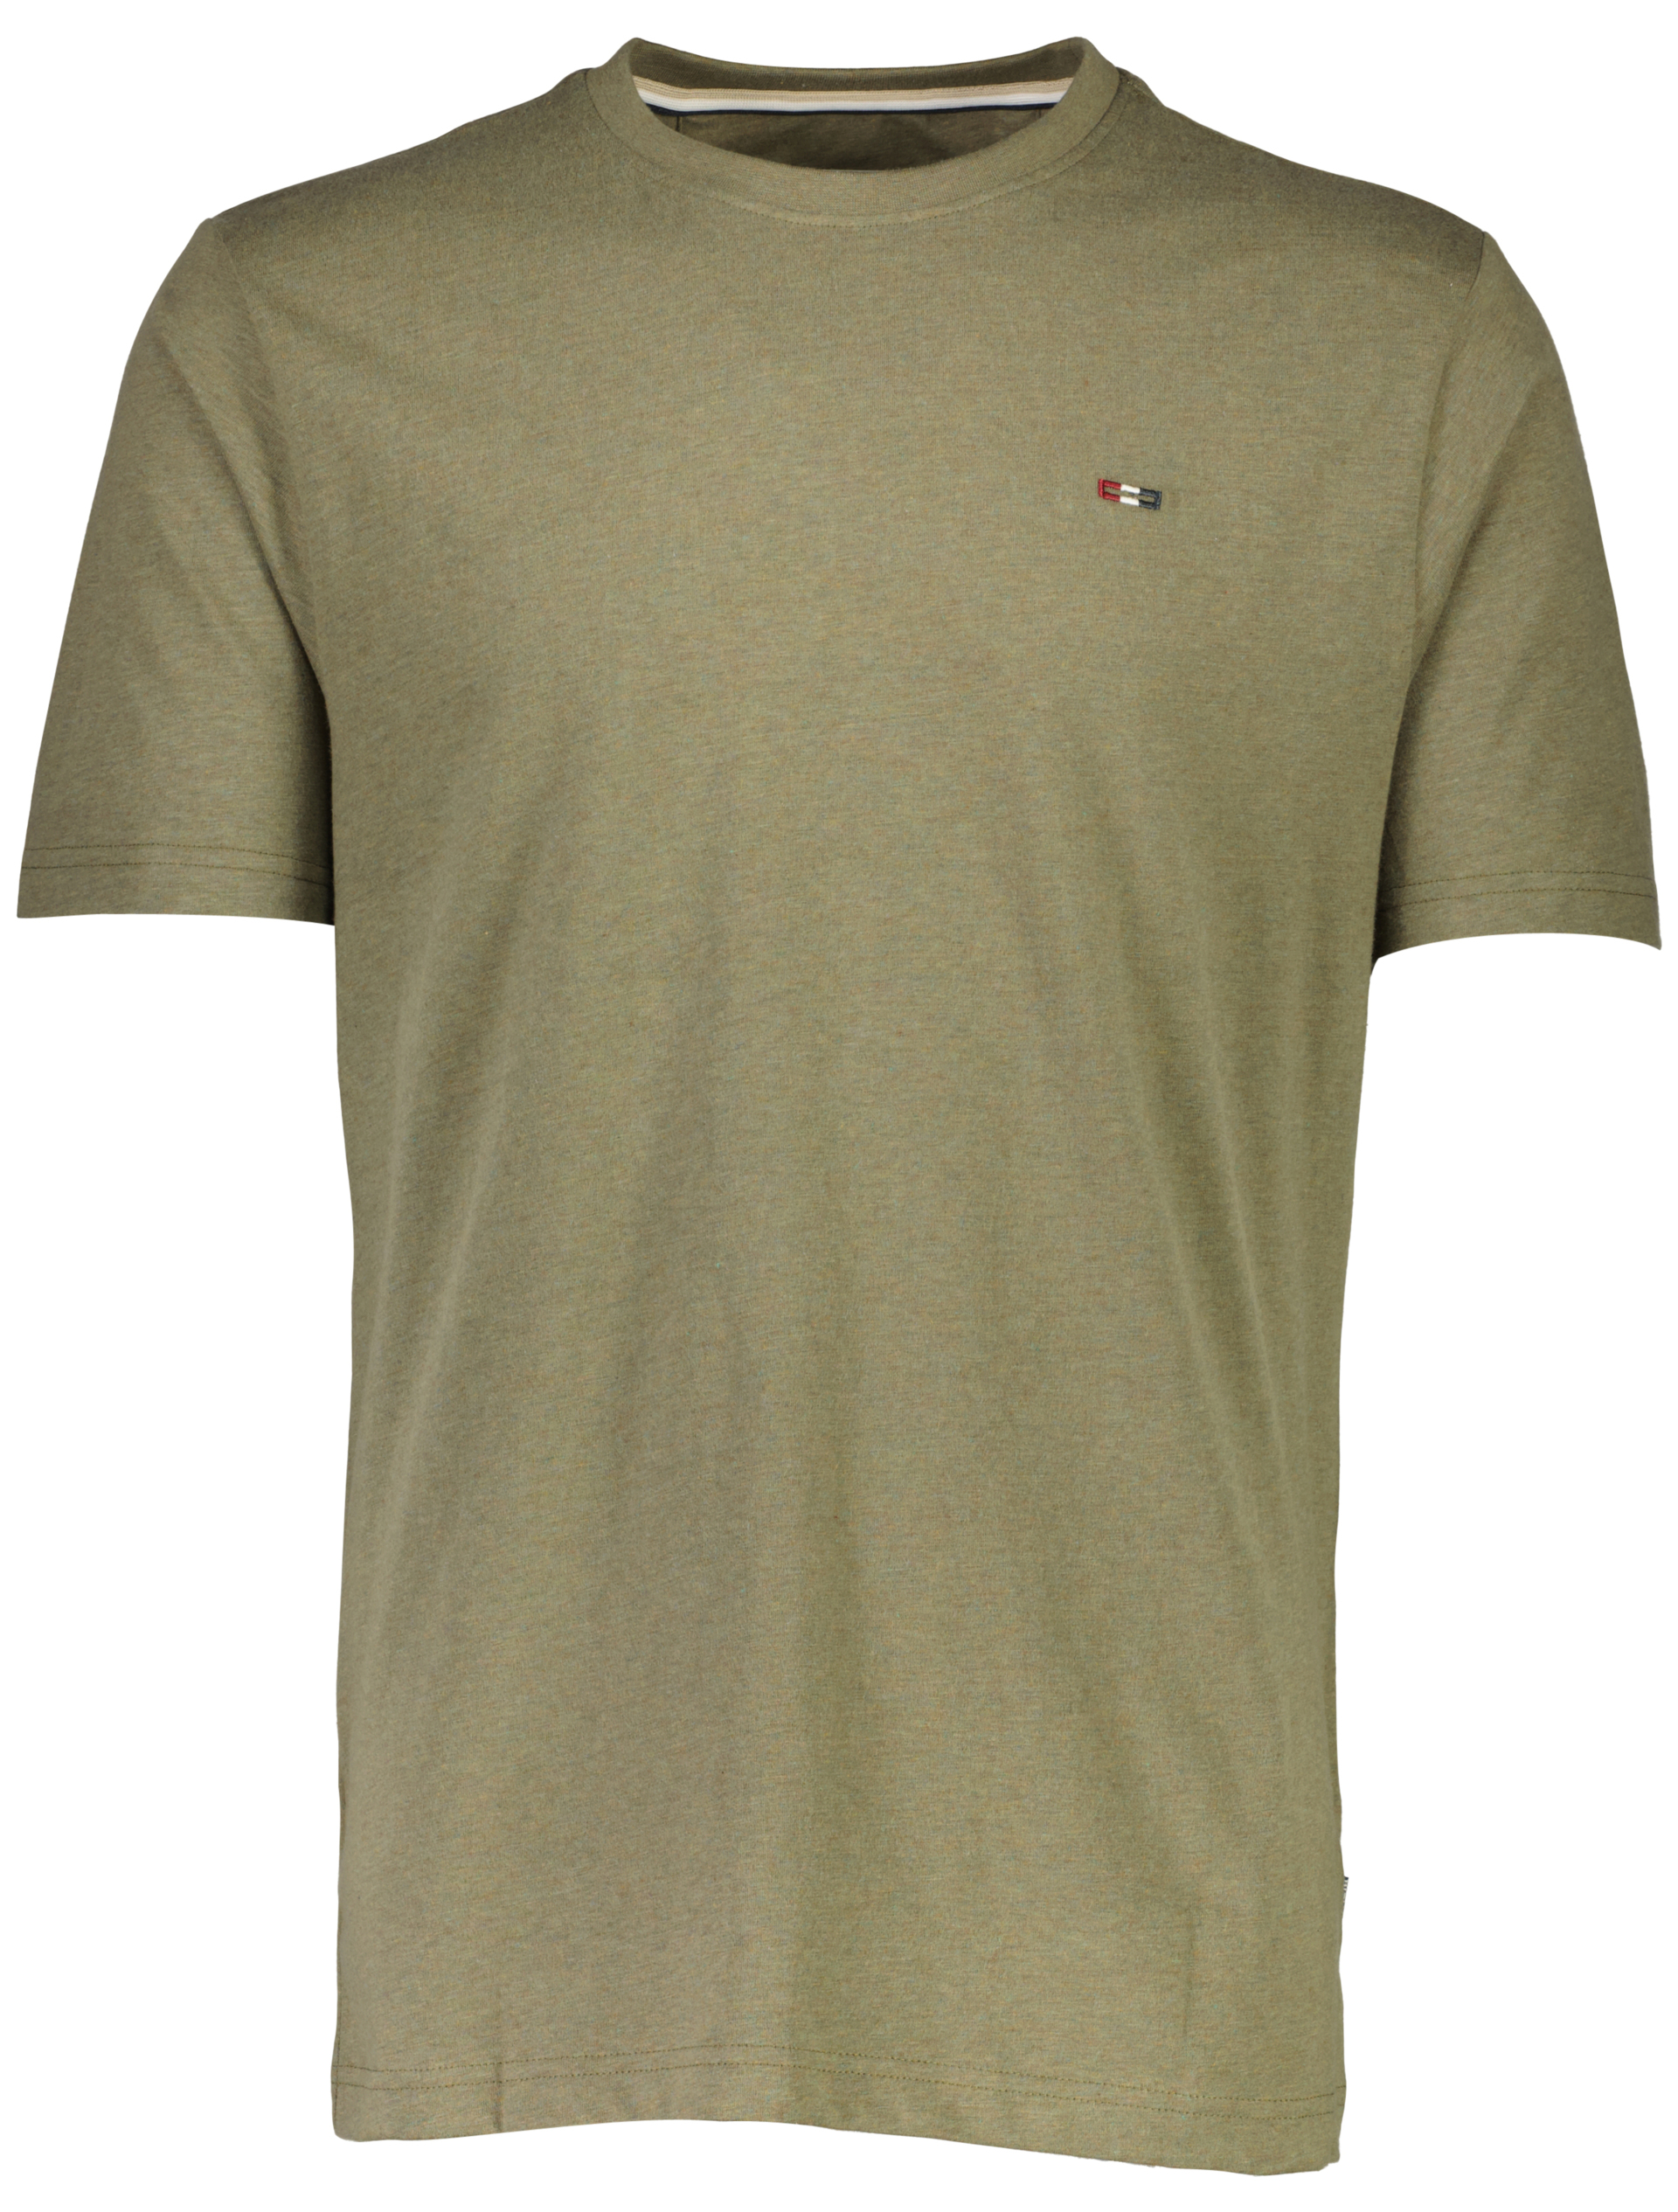 Bison T-shirt grøn / army mel